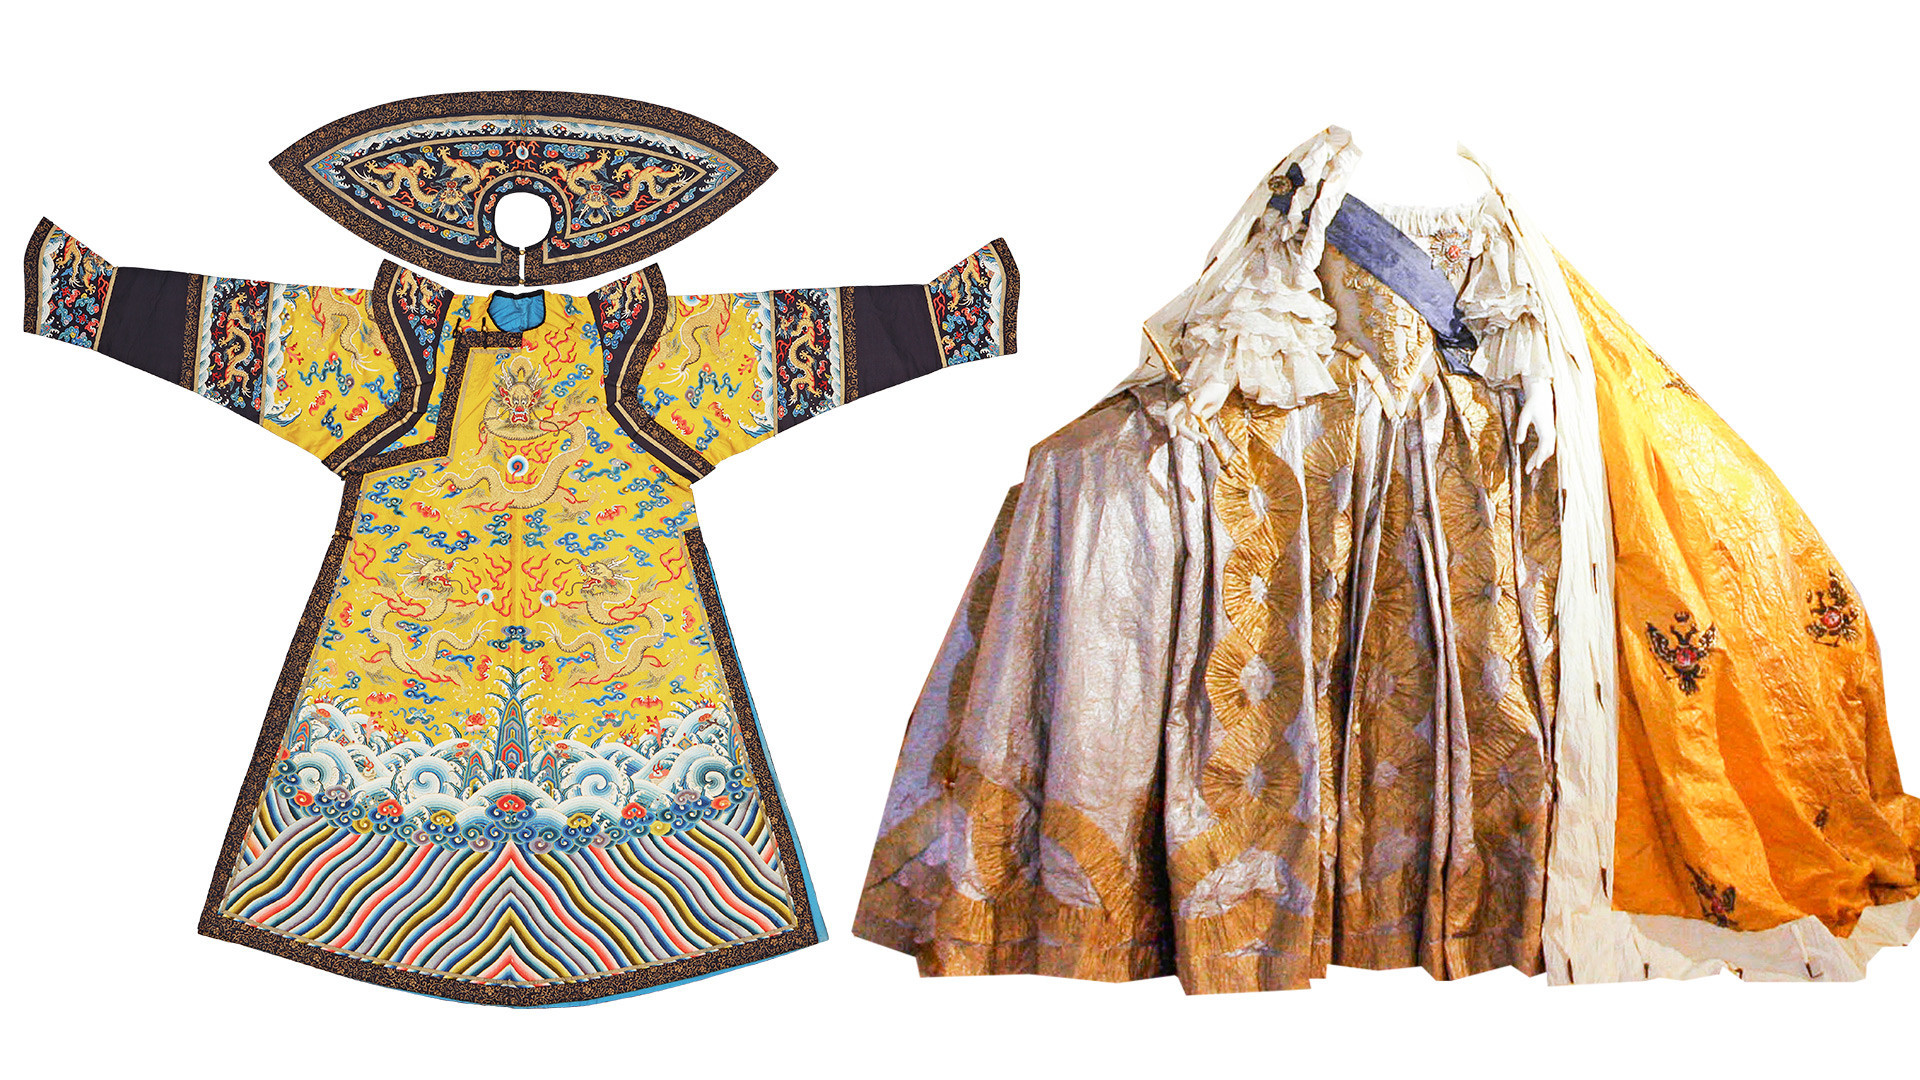 À esquerda, o grande manto da Imperatriz chinesa da era Quing. À direita, o vestido de coroação de uma das imperatrizes russas.